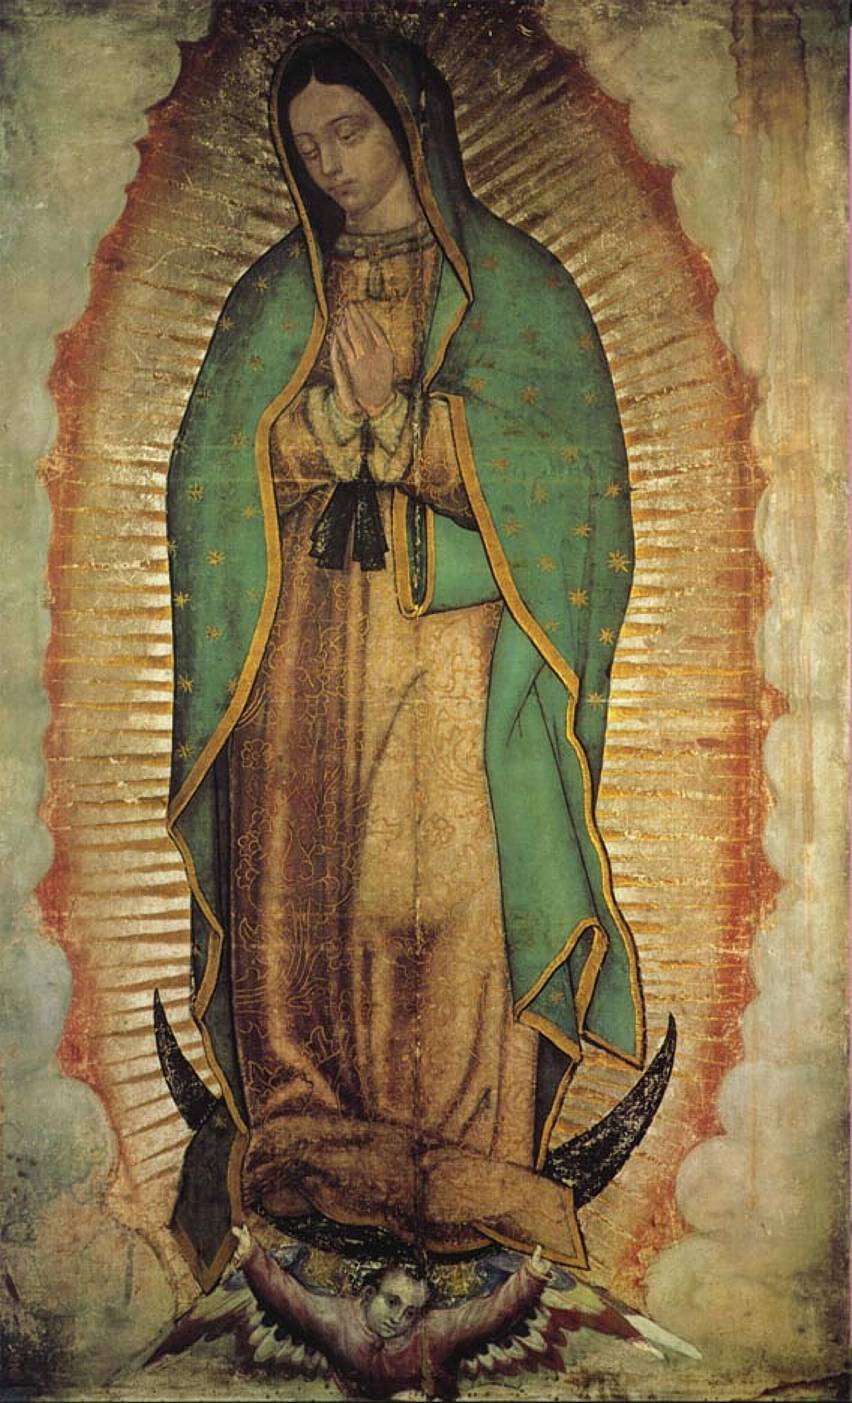 Virgen De Guadalupe Phone Wallpapers - Wallpaper Cave